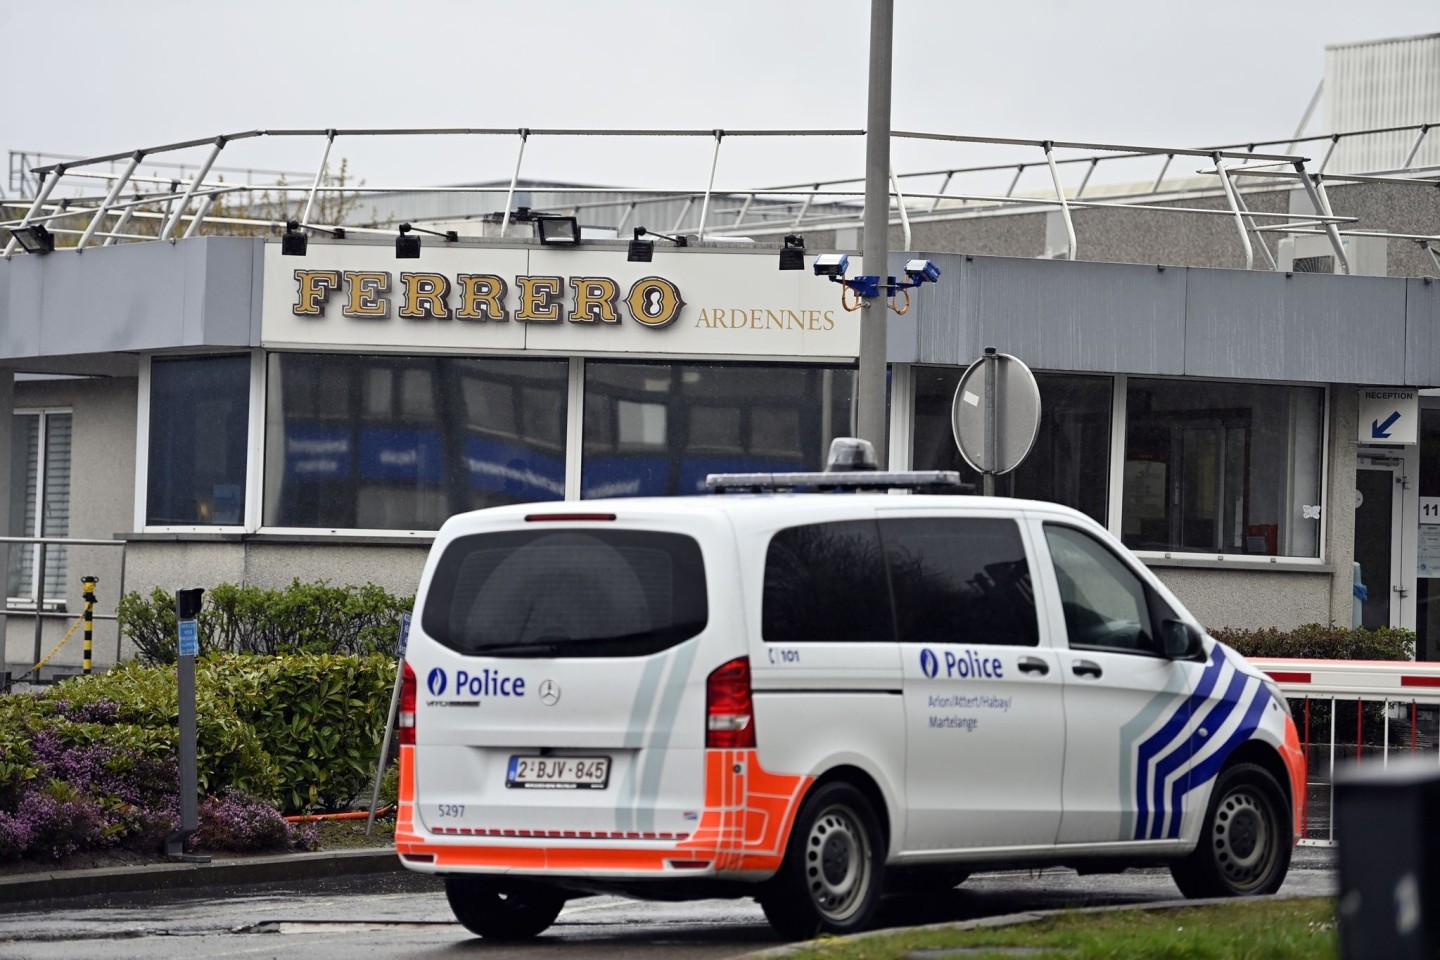 Ein Polizeifahrzeug steht vor der Ferrero-Fabrik im belgischen Arlon.